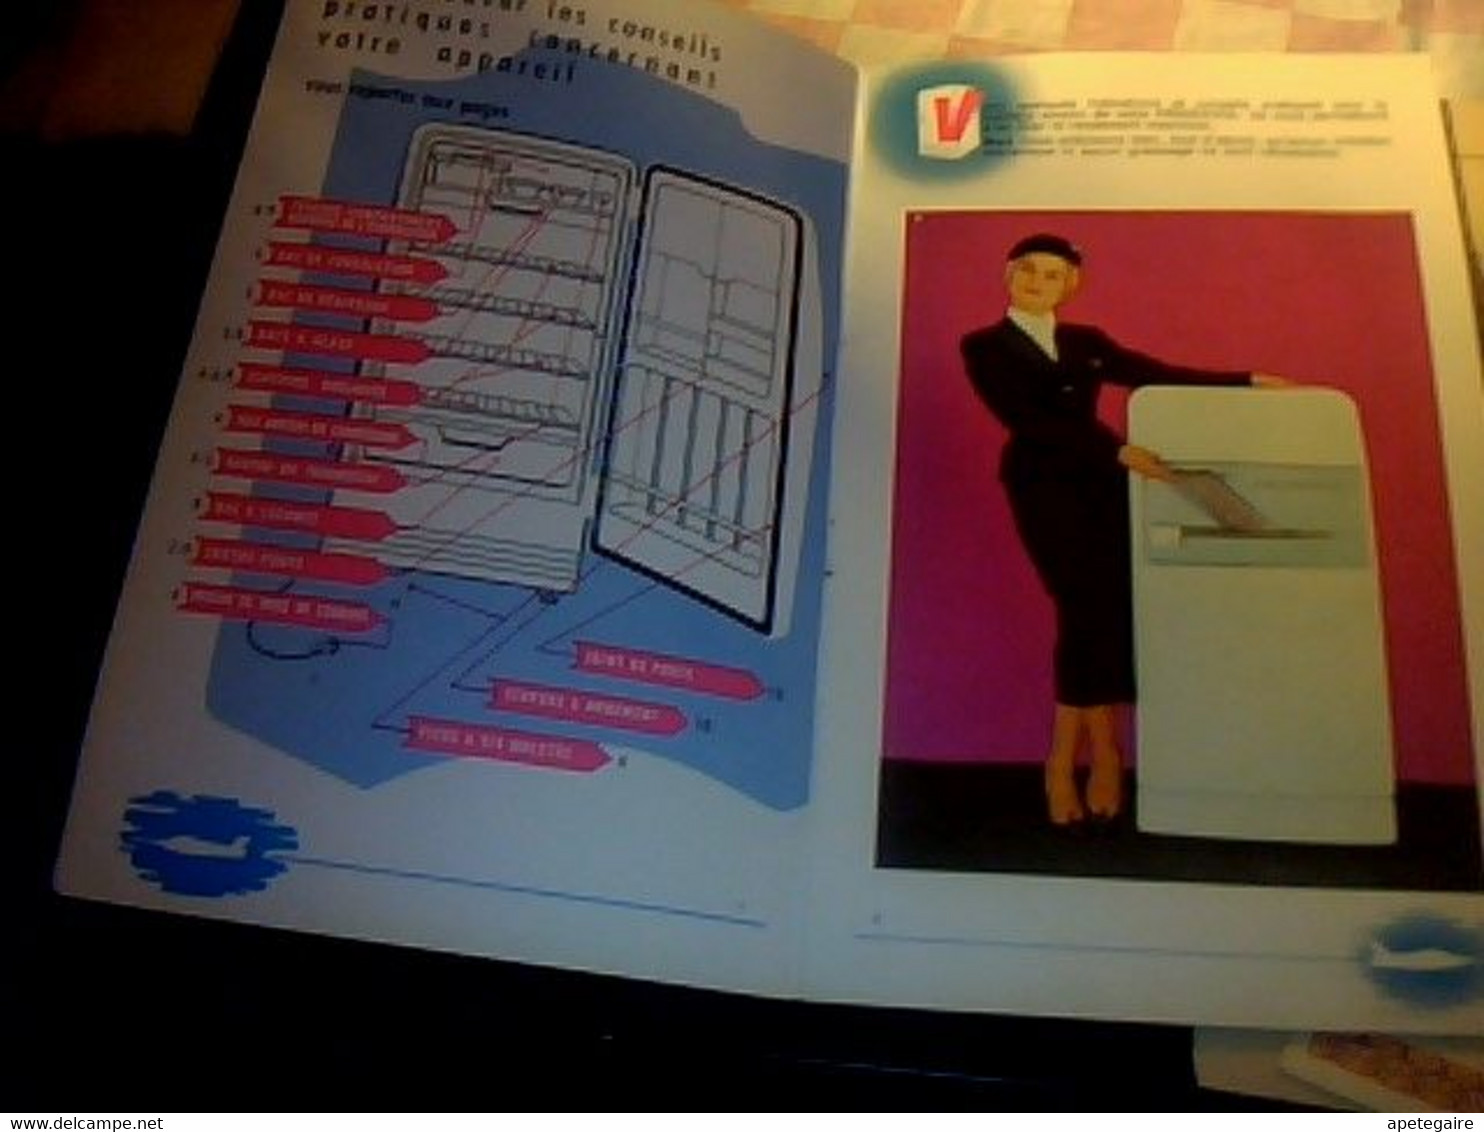 Réfrigérateurs Frigeavia Livret Technique Avec Recettes Plus Certifica De Garantie Année 1962 - Matériel Et Accessoires